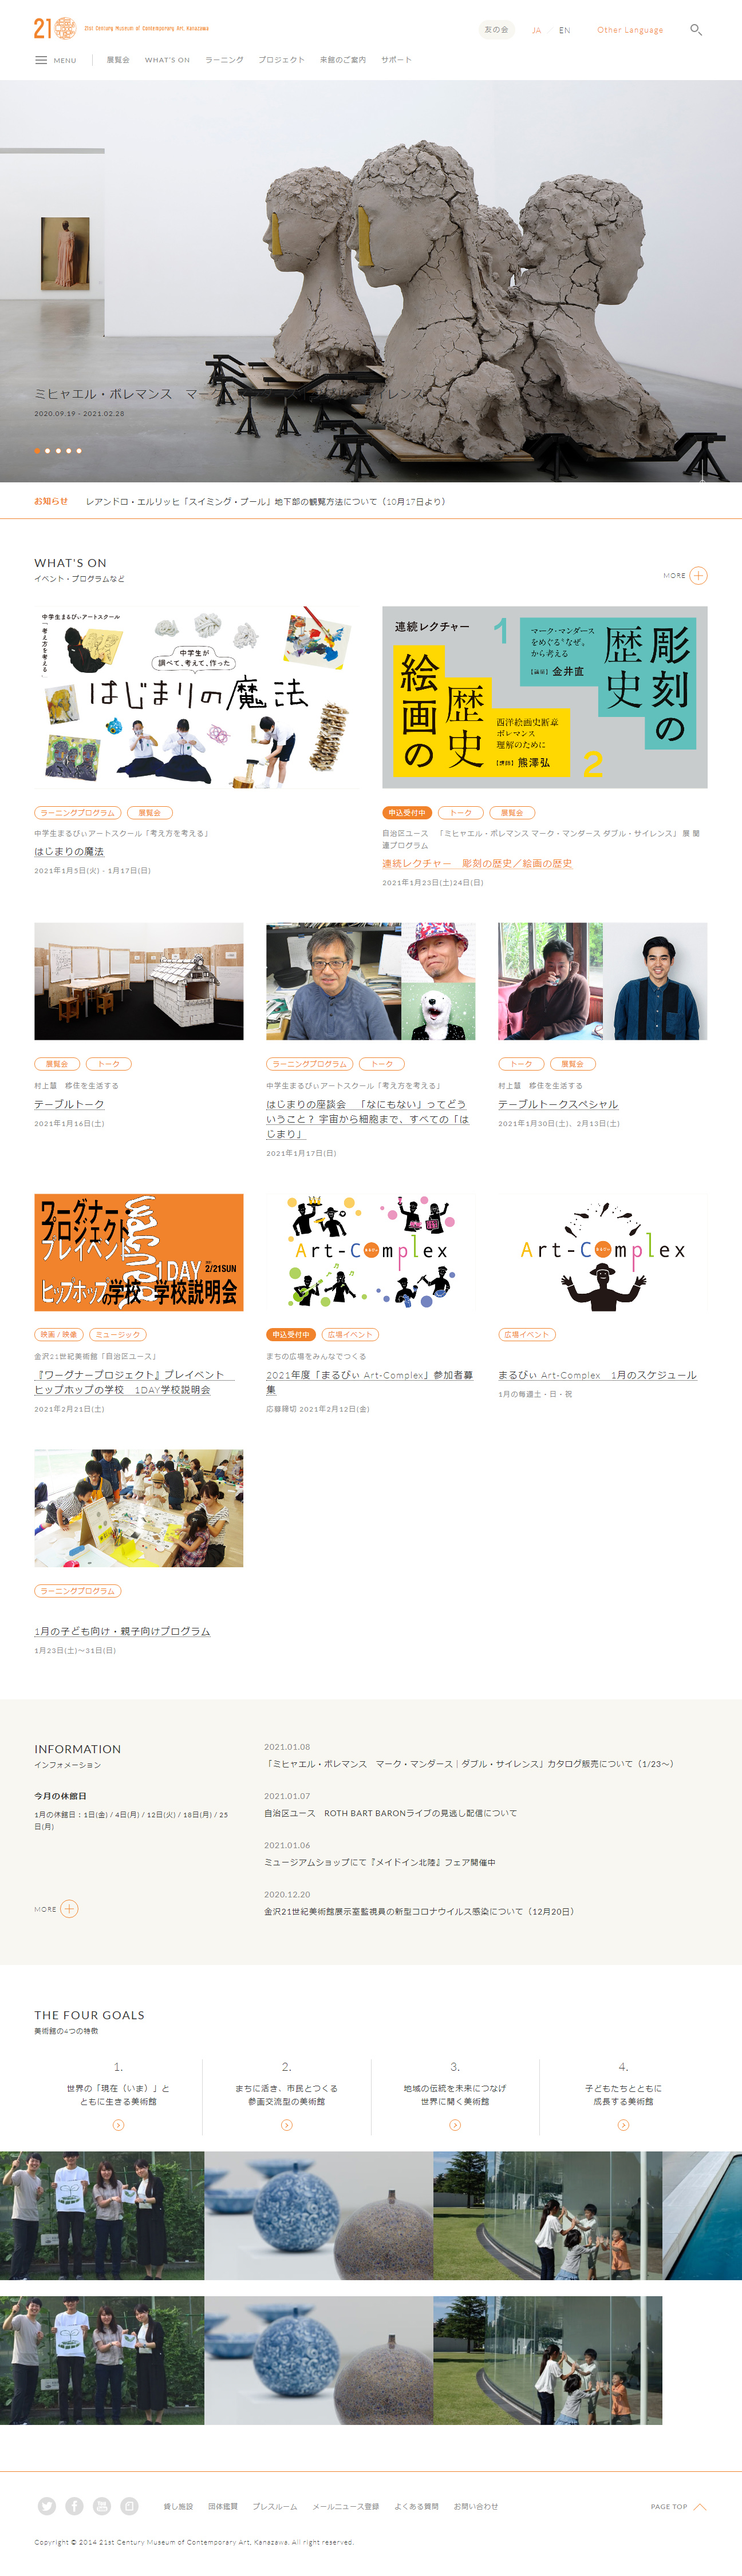  金沢21世纪美术馆网站设计